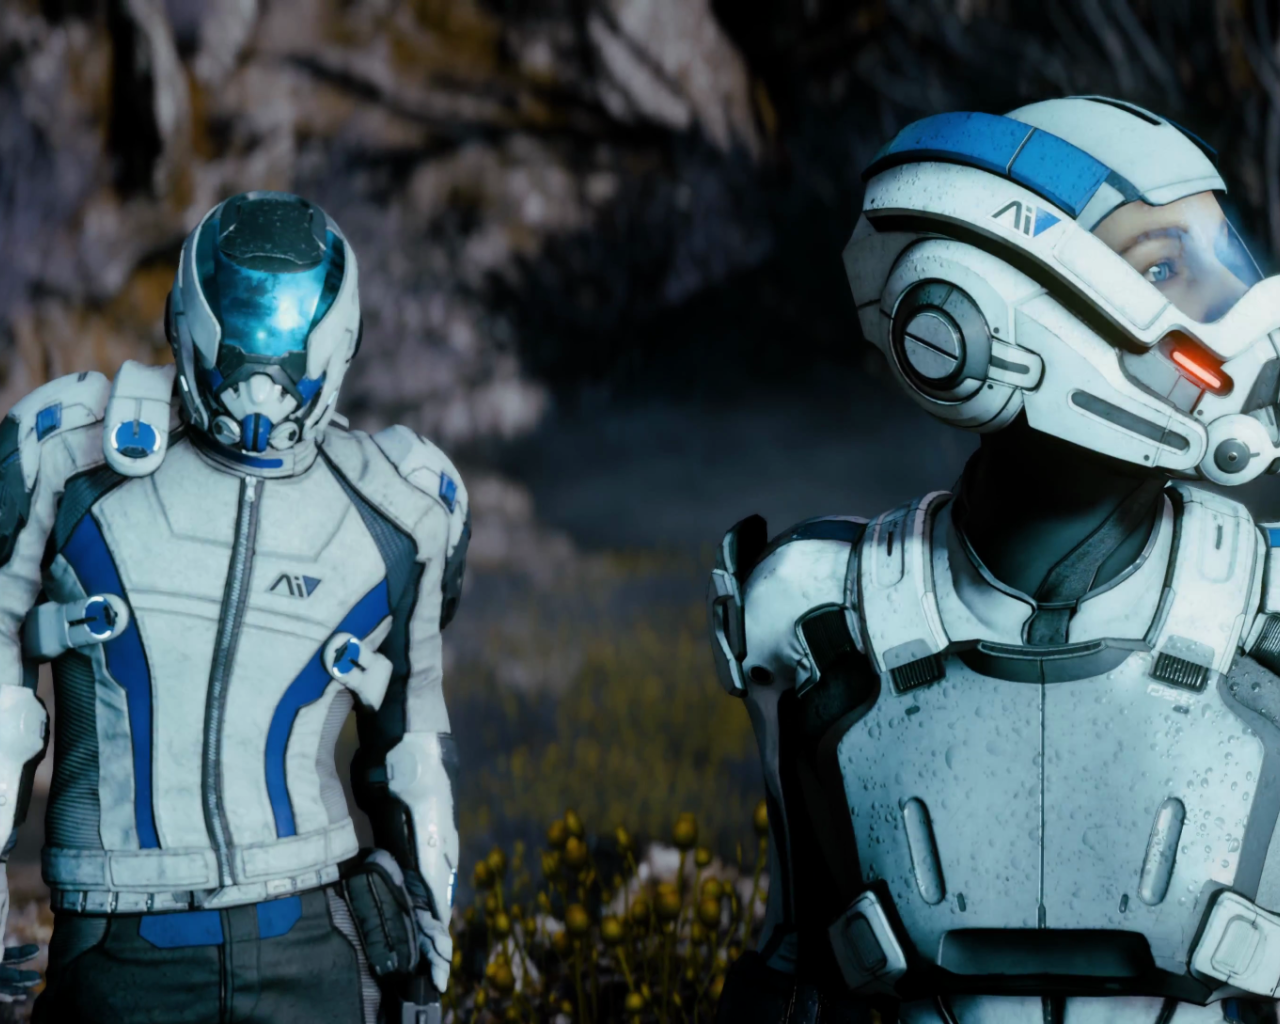 Скотт и Сара главные герои игры Mass Effect Andromeda 